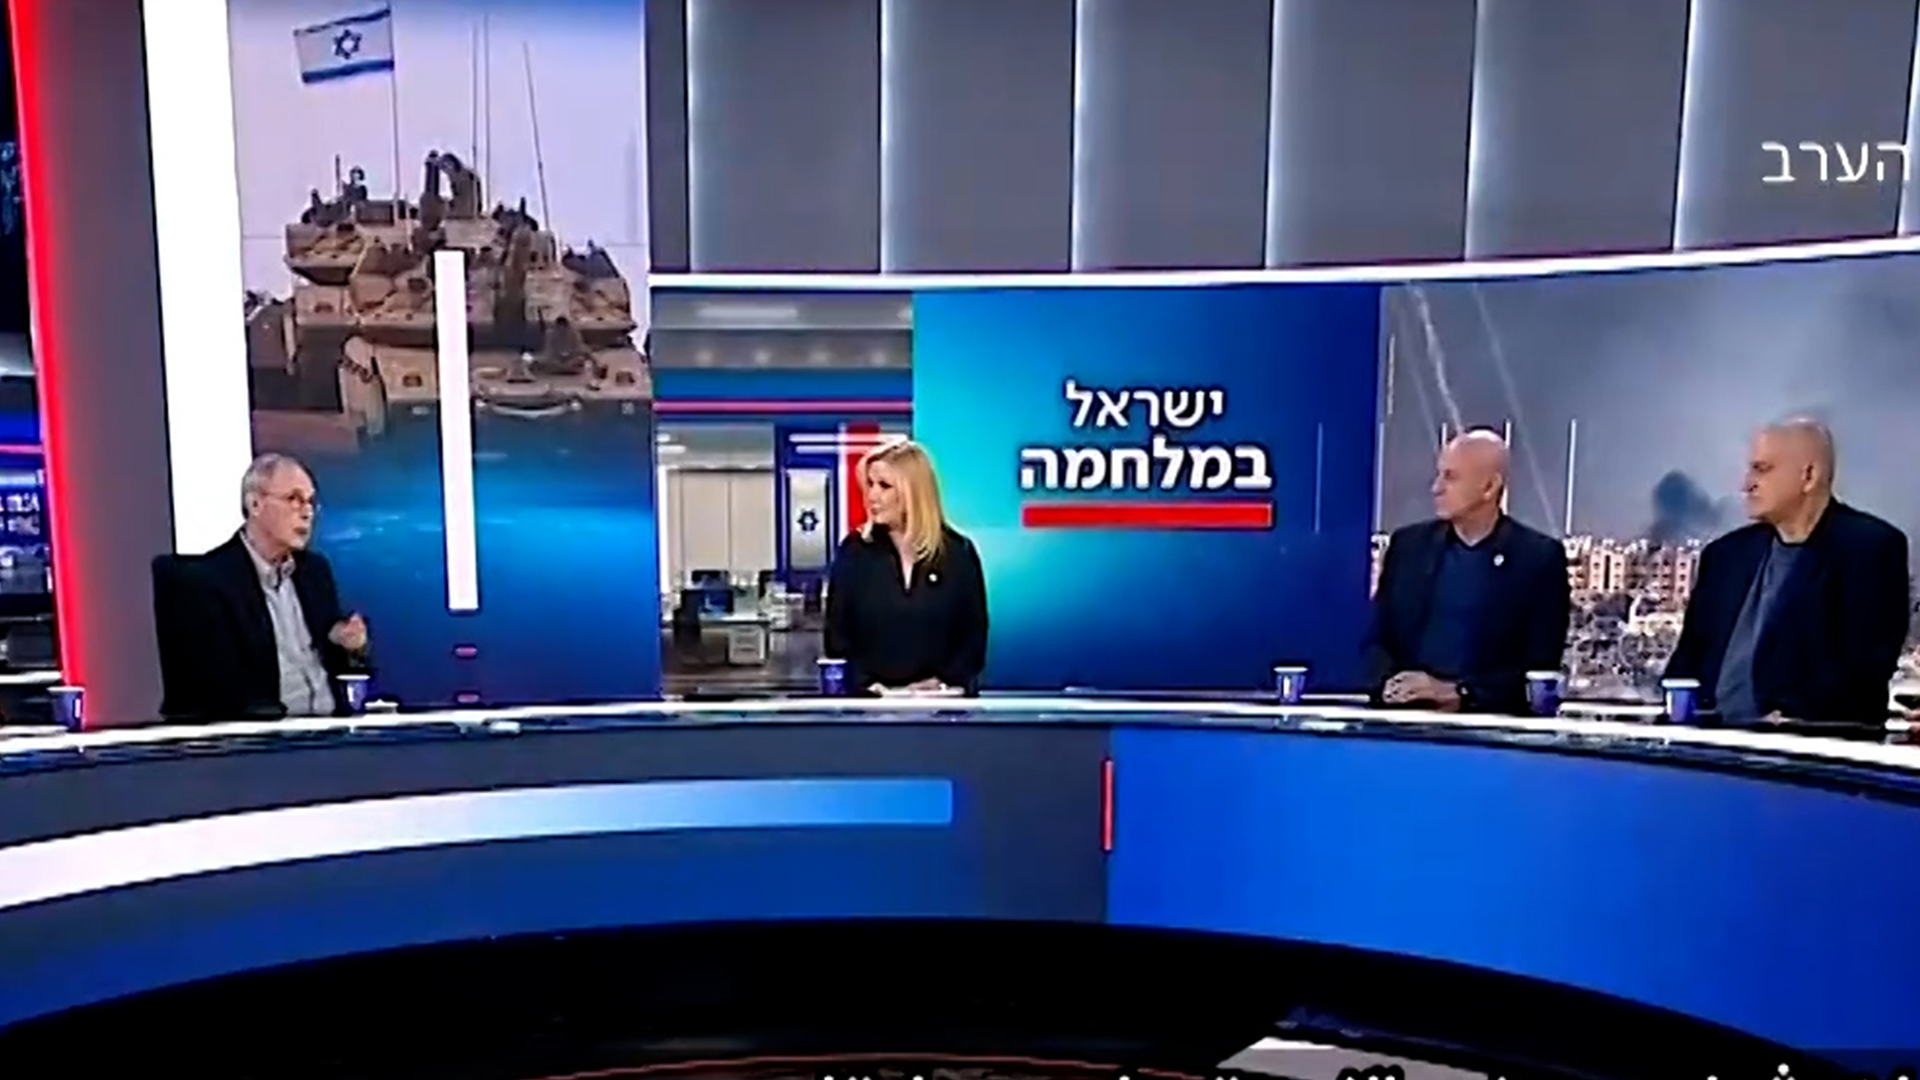 الإعلام العبري: الإسرائيليون أصبحوا خائفين على الجنود وليس على الأسرى فقط | أخبار – البوكس نيوز